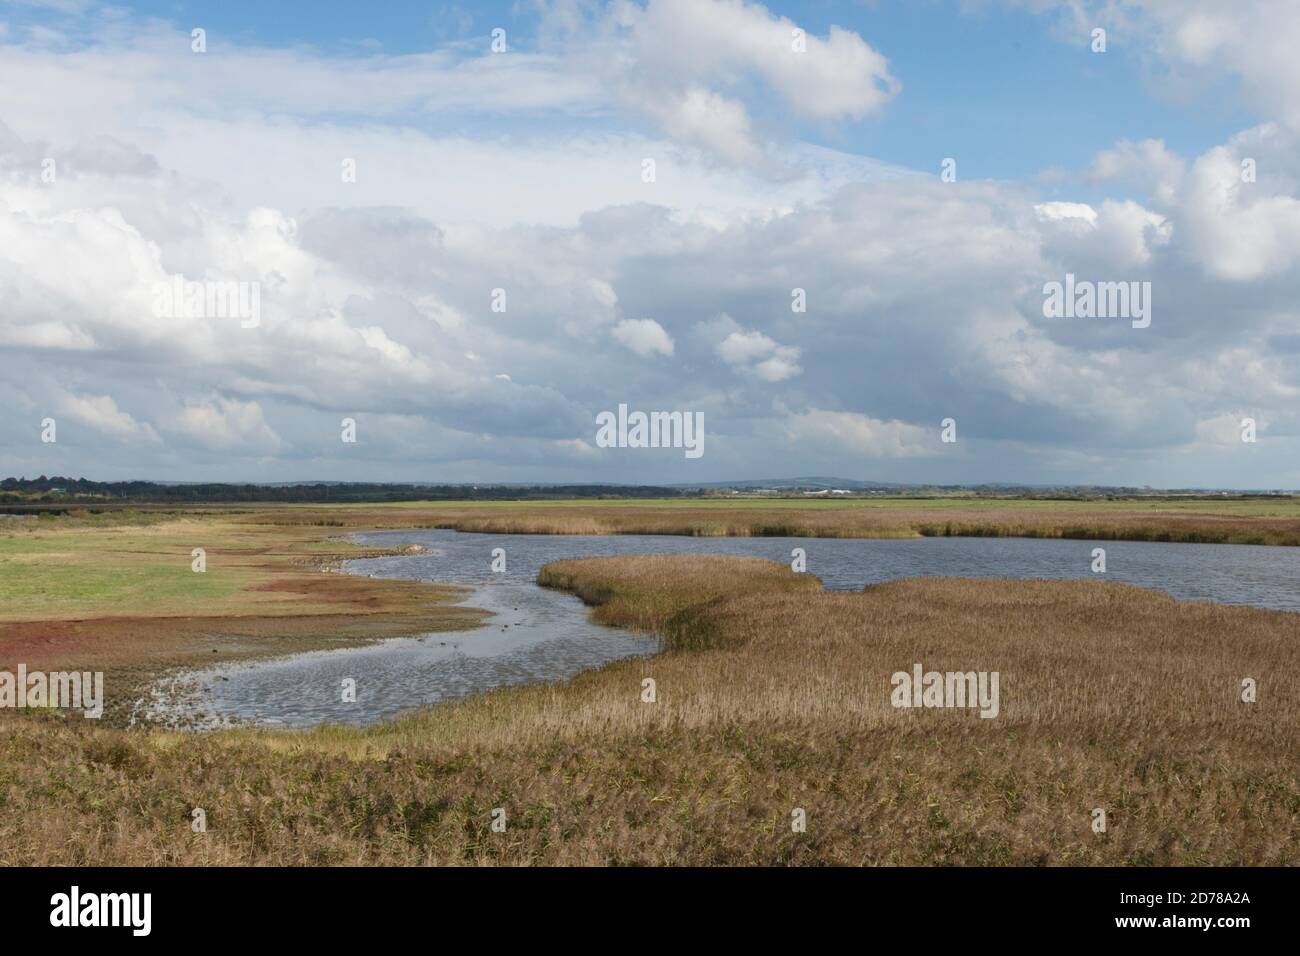 Farlington Marshes Réserve naturelle locale, vue sur le lac, marée haute pour barboter des oiseaux et des oiseaux sauvages. Octobre. Marée haute. Hampshire, Royaume-Uni Banque D'Images